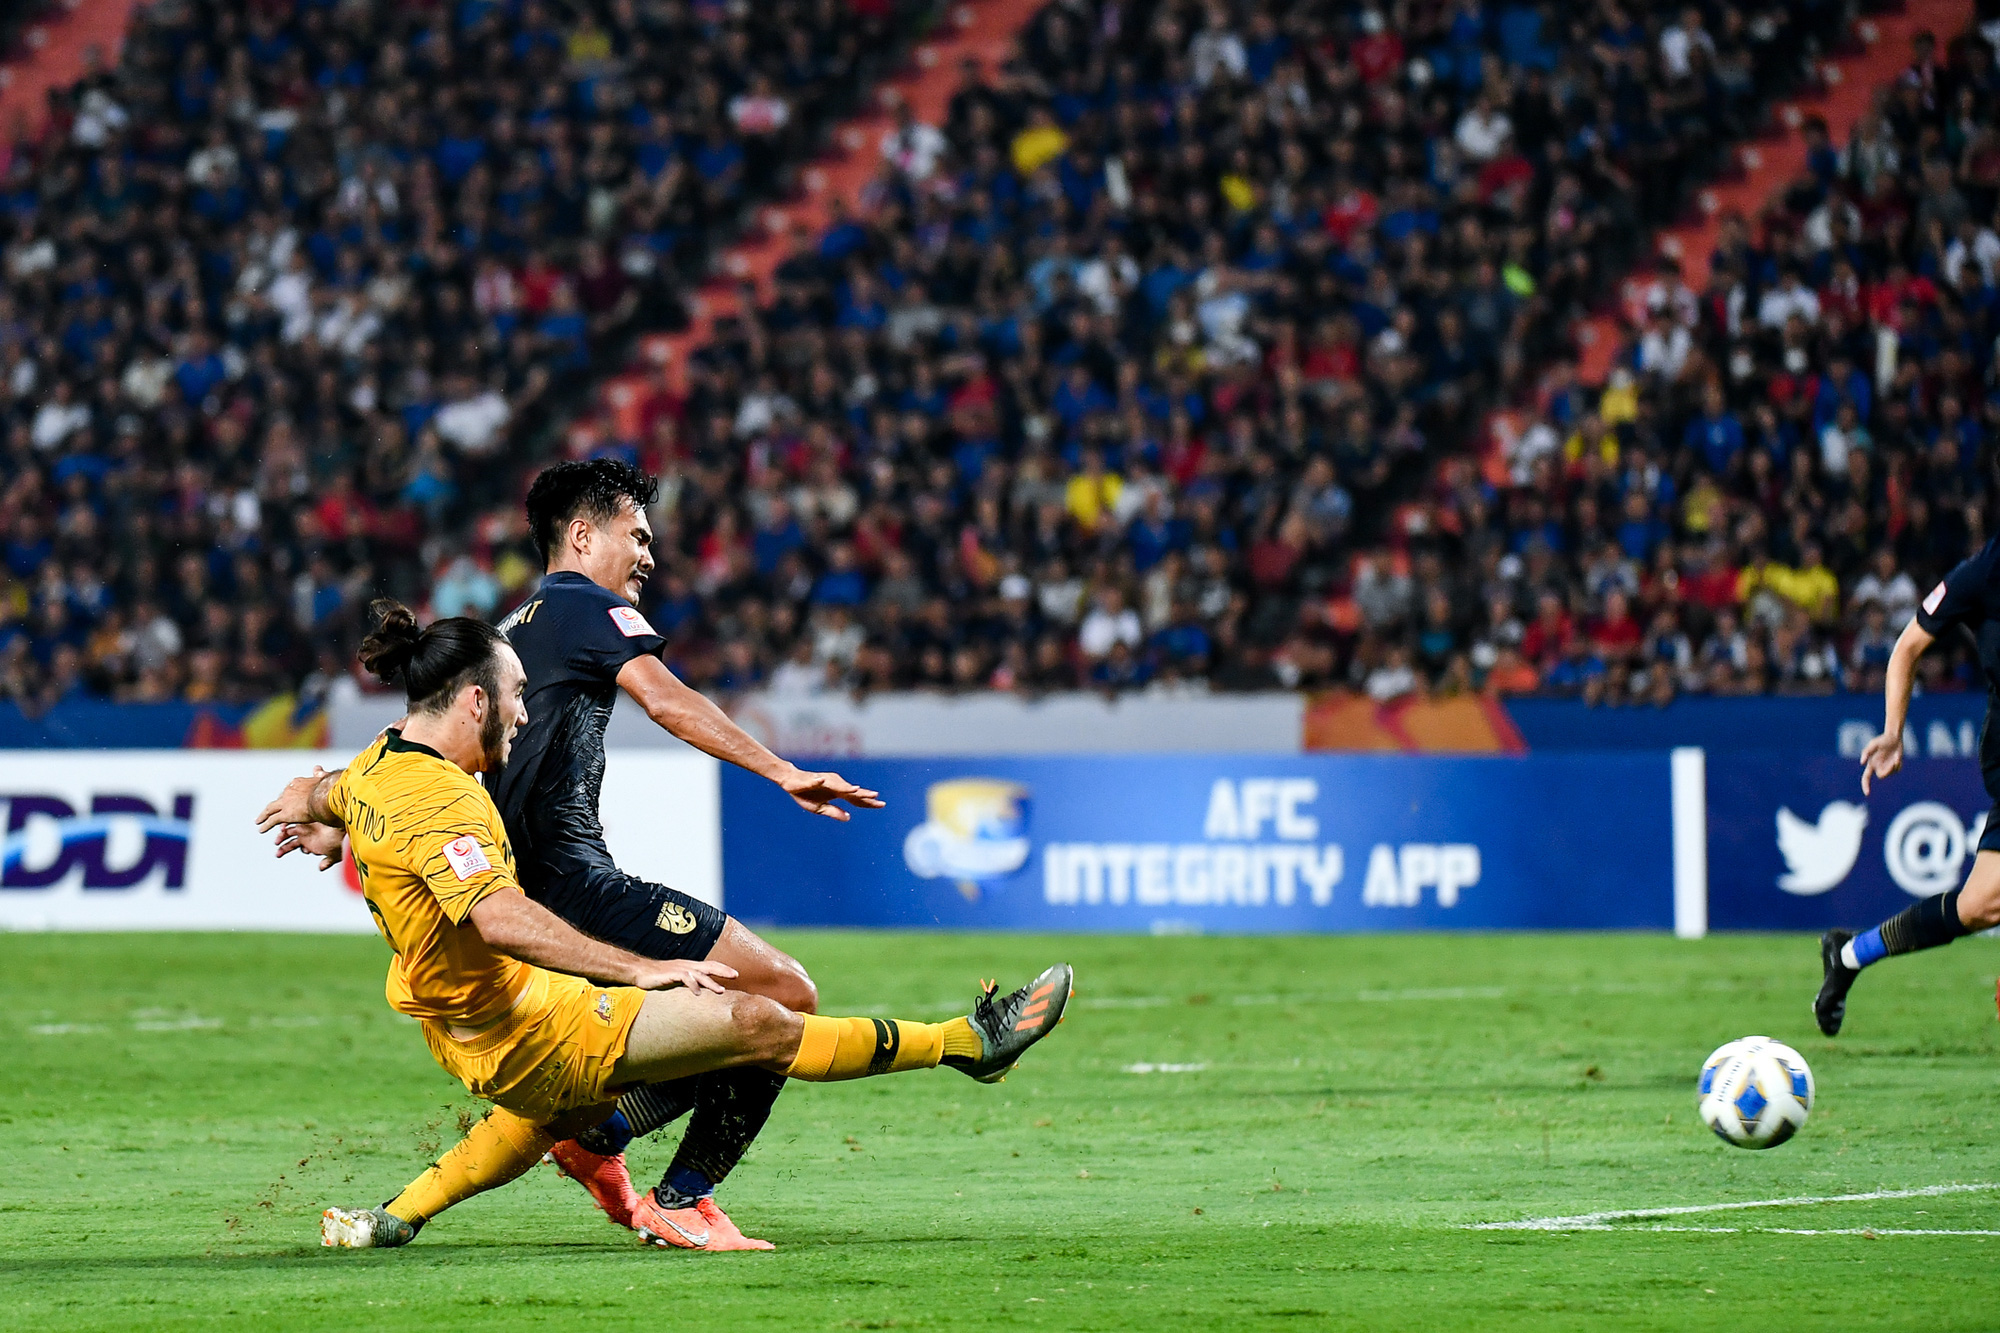 Lỡ chân sút trúng mồm tiền đạo đội bạn, U23 Thái Lan khiến con quái thú thức tỉnh rồi nhận cái kết không thể đắng hơn - Ảnh 6.